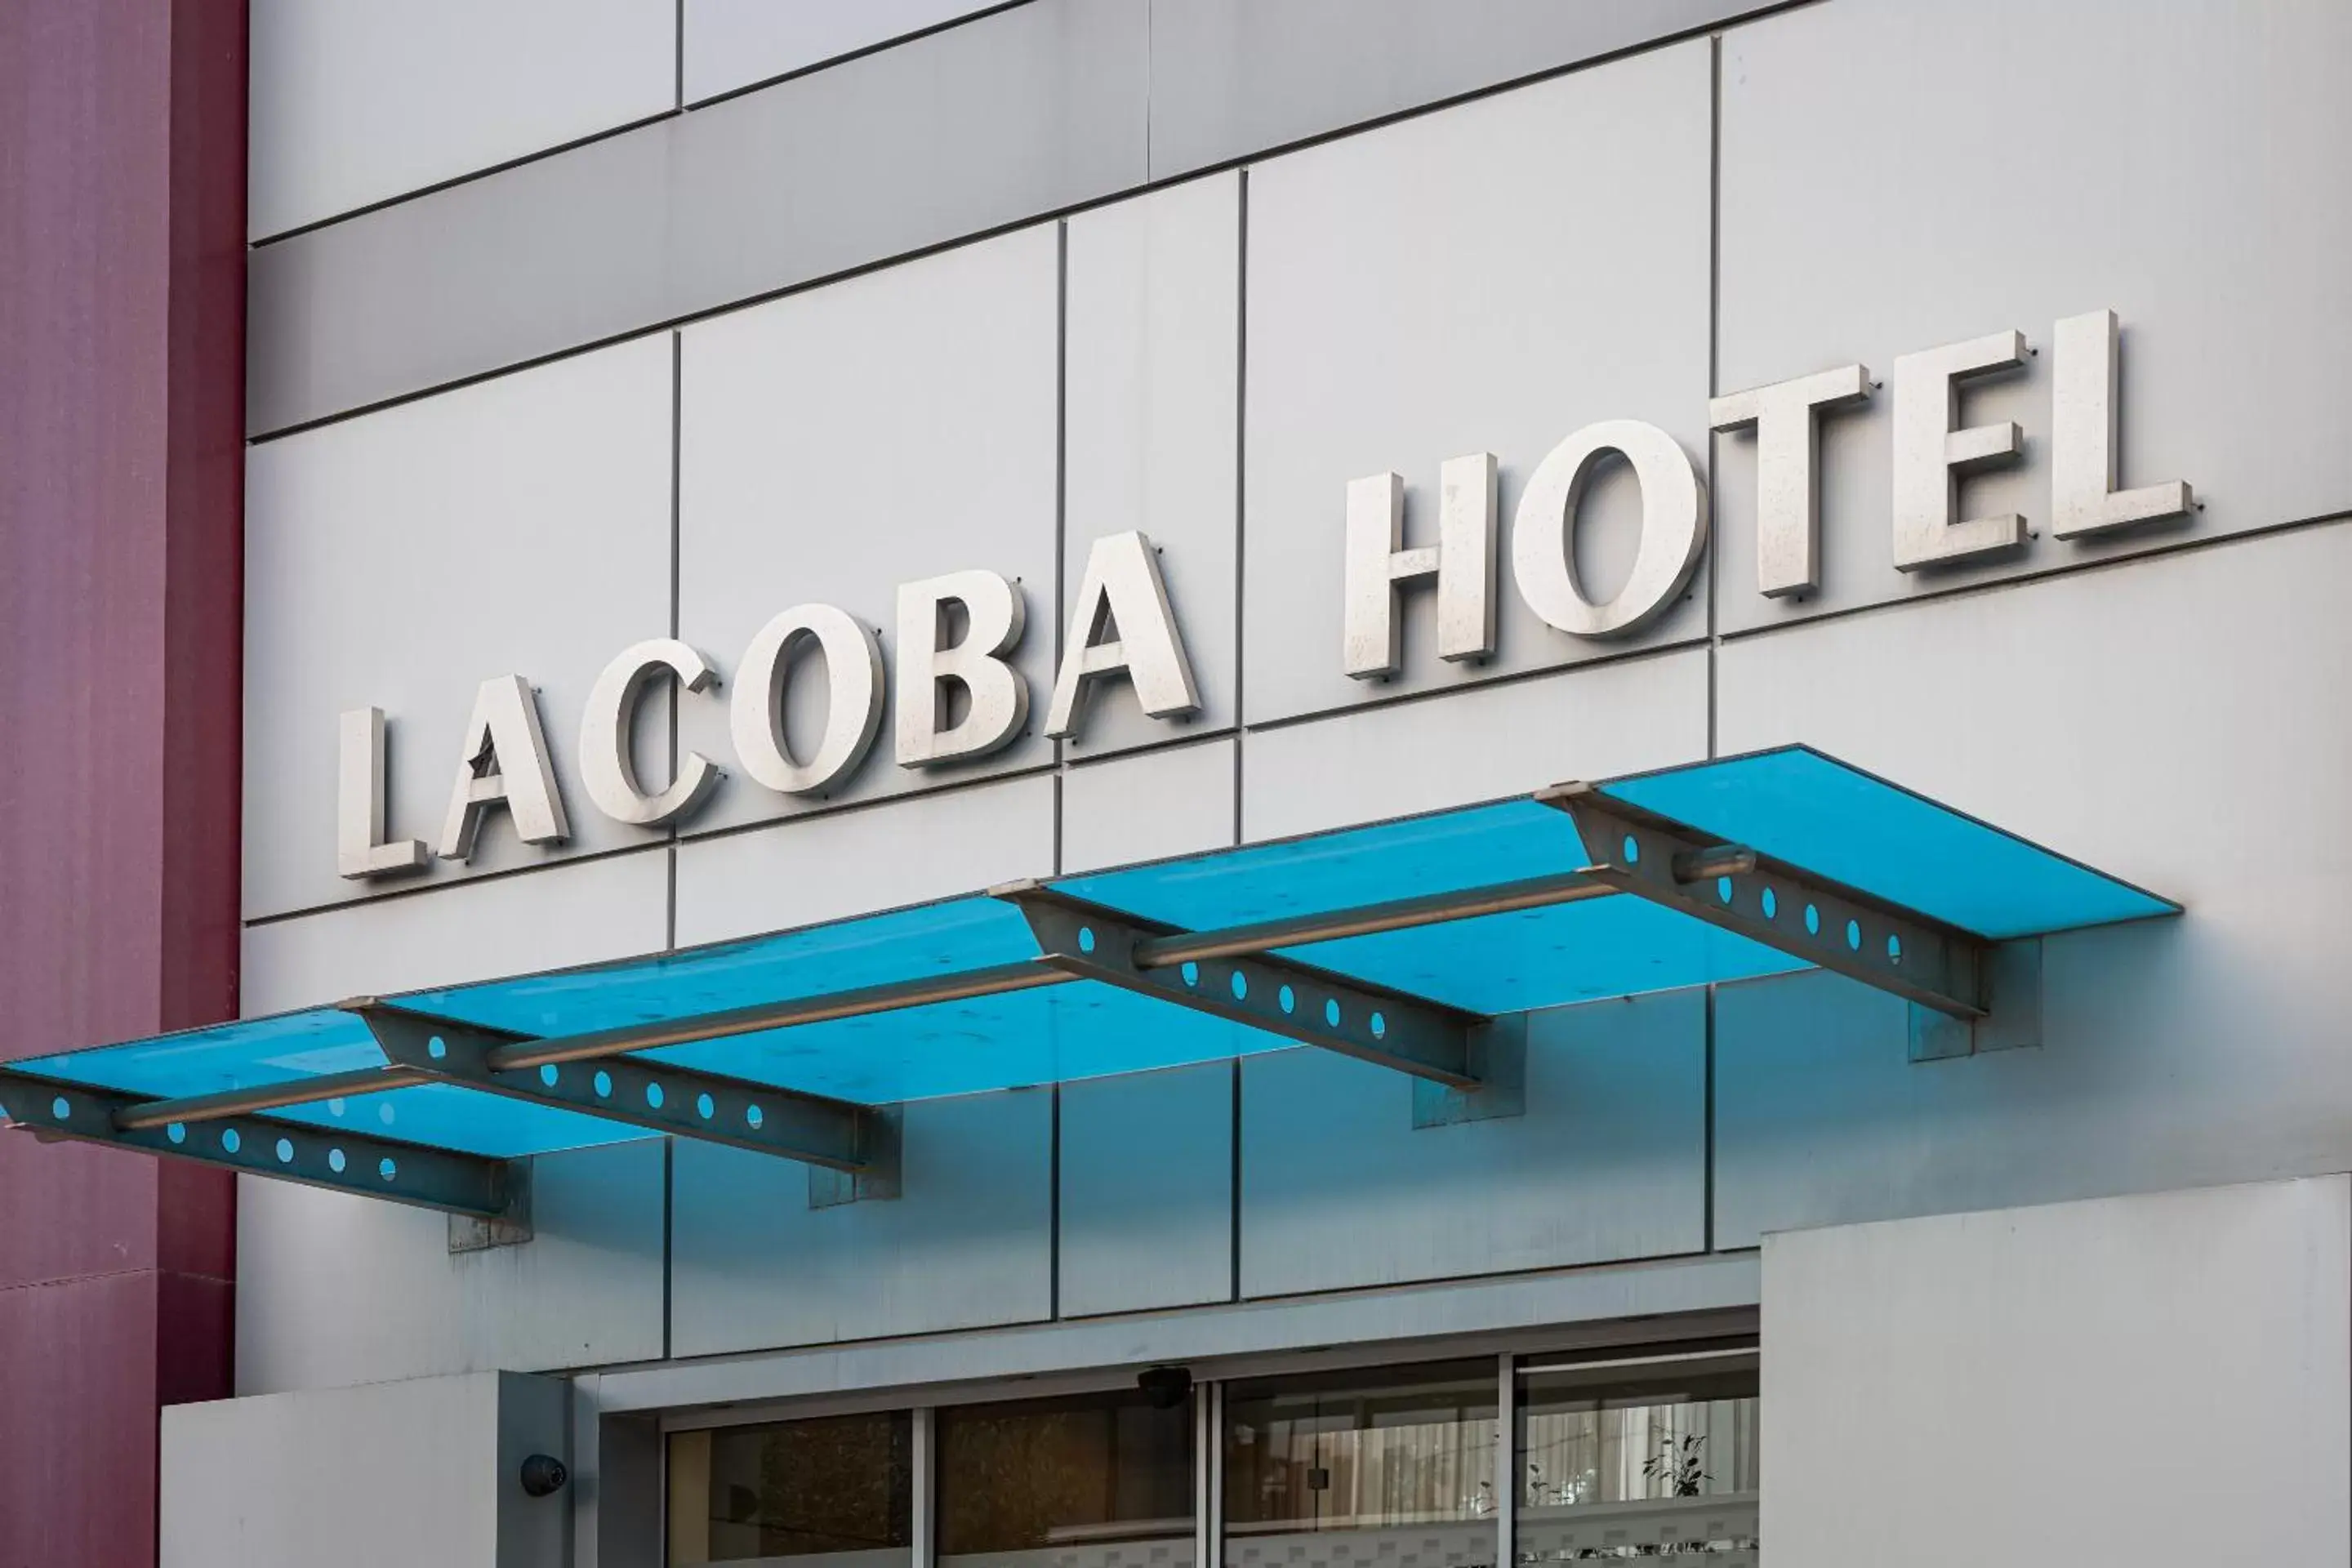 Facade/entrance in Lacoba Hotel